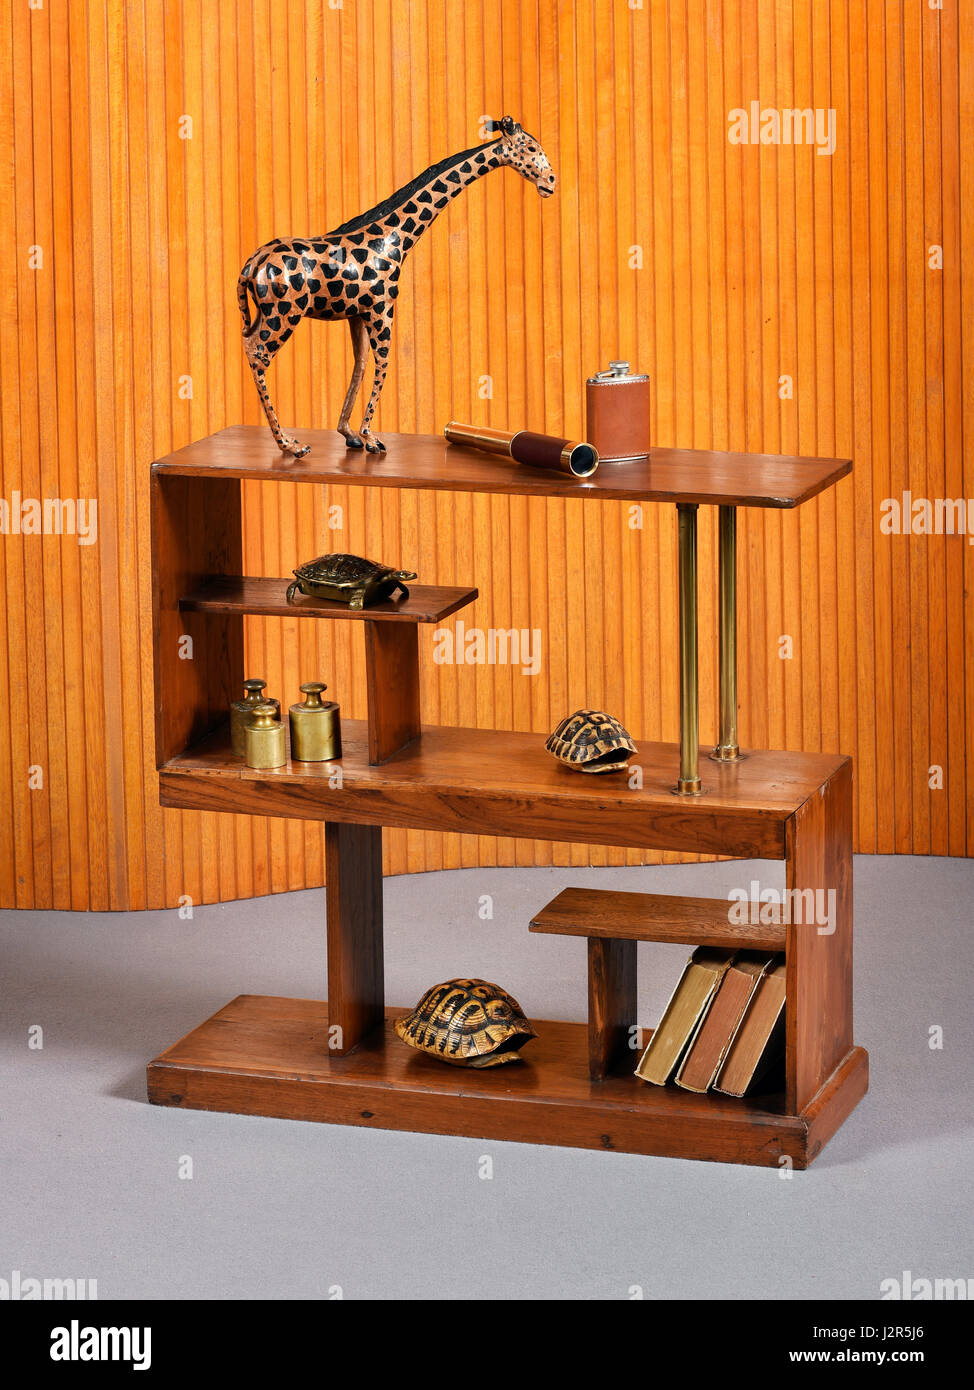 Piccola unità indipendente di legno rettangolare o libreria etagere con un souvenir in legno, giraffe libri tortoiseshells e pesi in ottone Foto Stock